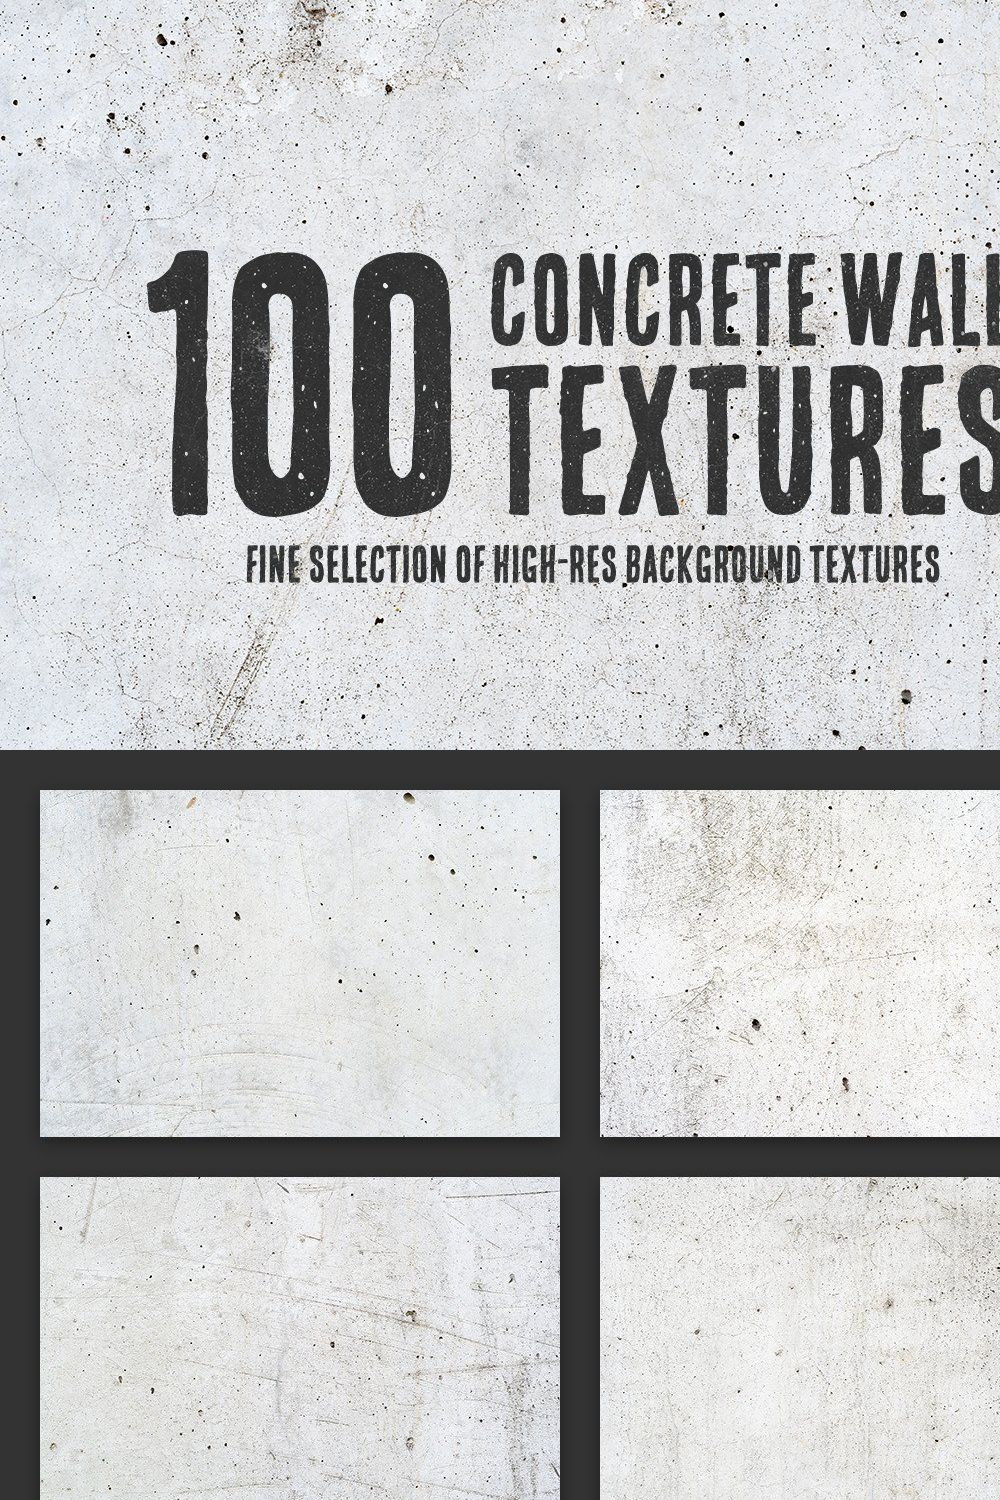 100 Concrete Wall Textures Bundle pinterest preview image.